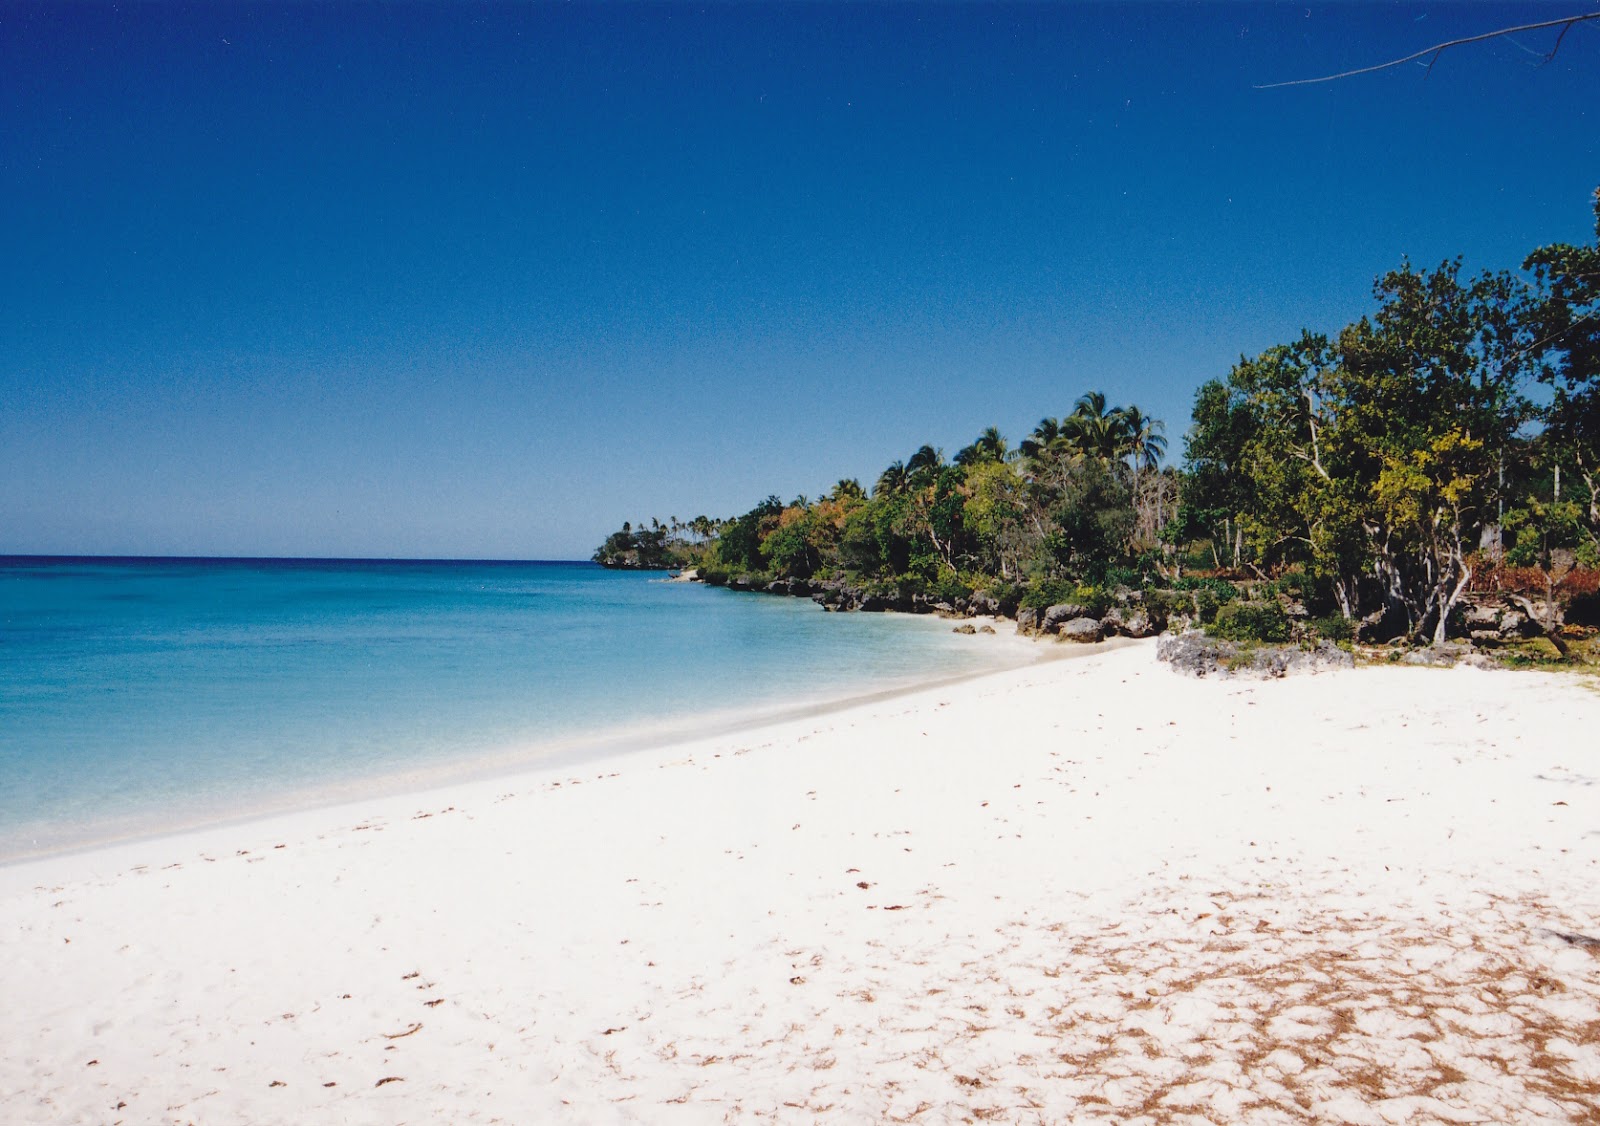 Luengoni Beach'in fotoğrafı doğal alan içinde bulunmaktadır